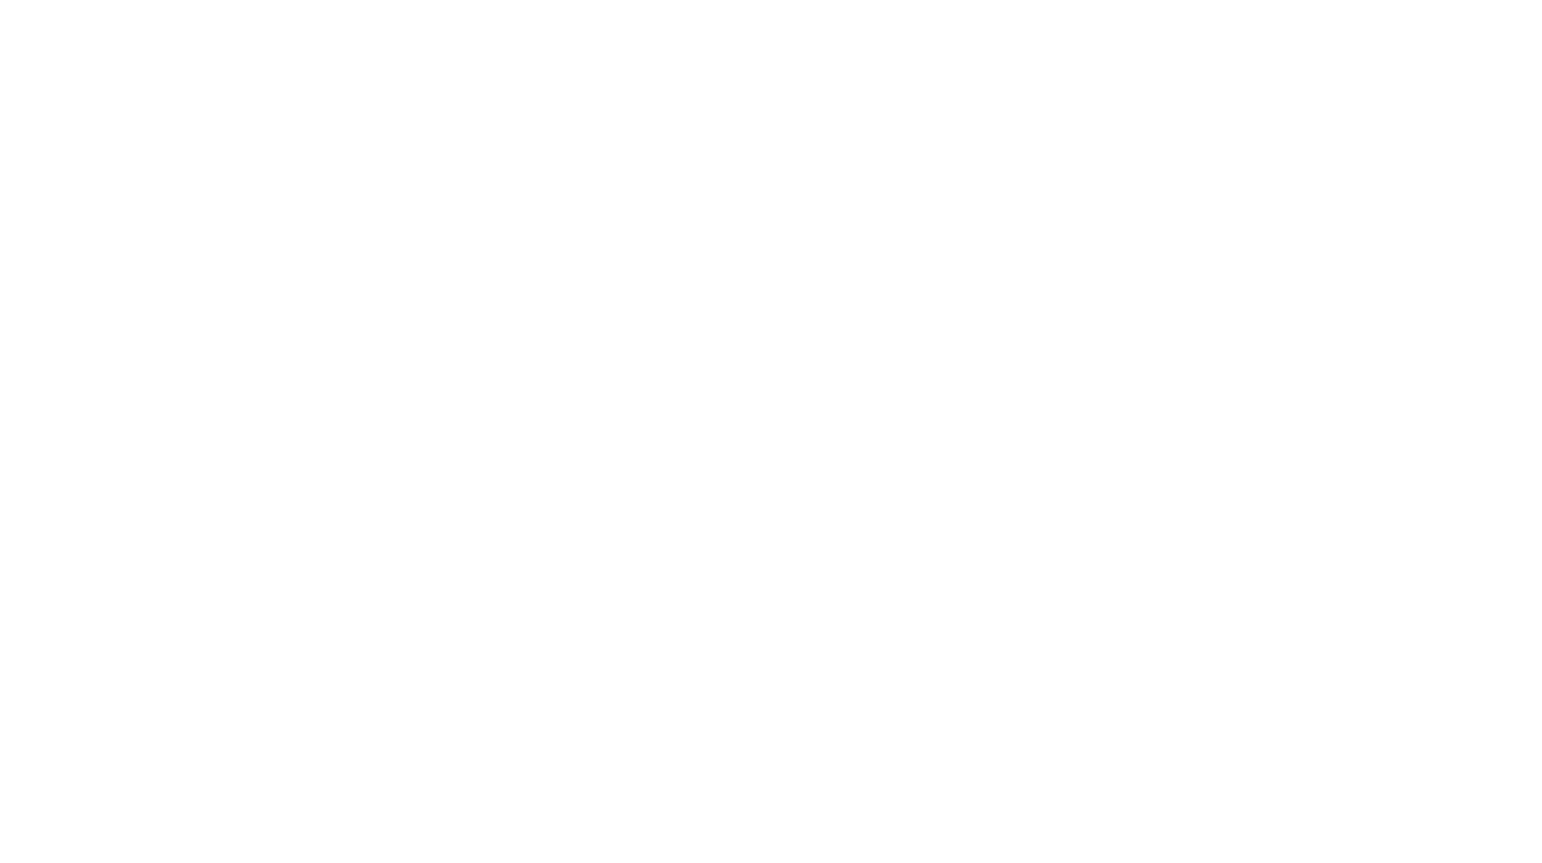 Técnicas Reunidas logo grand pour les fonds sombres (PNG transparent)